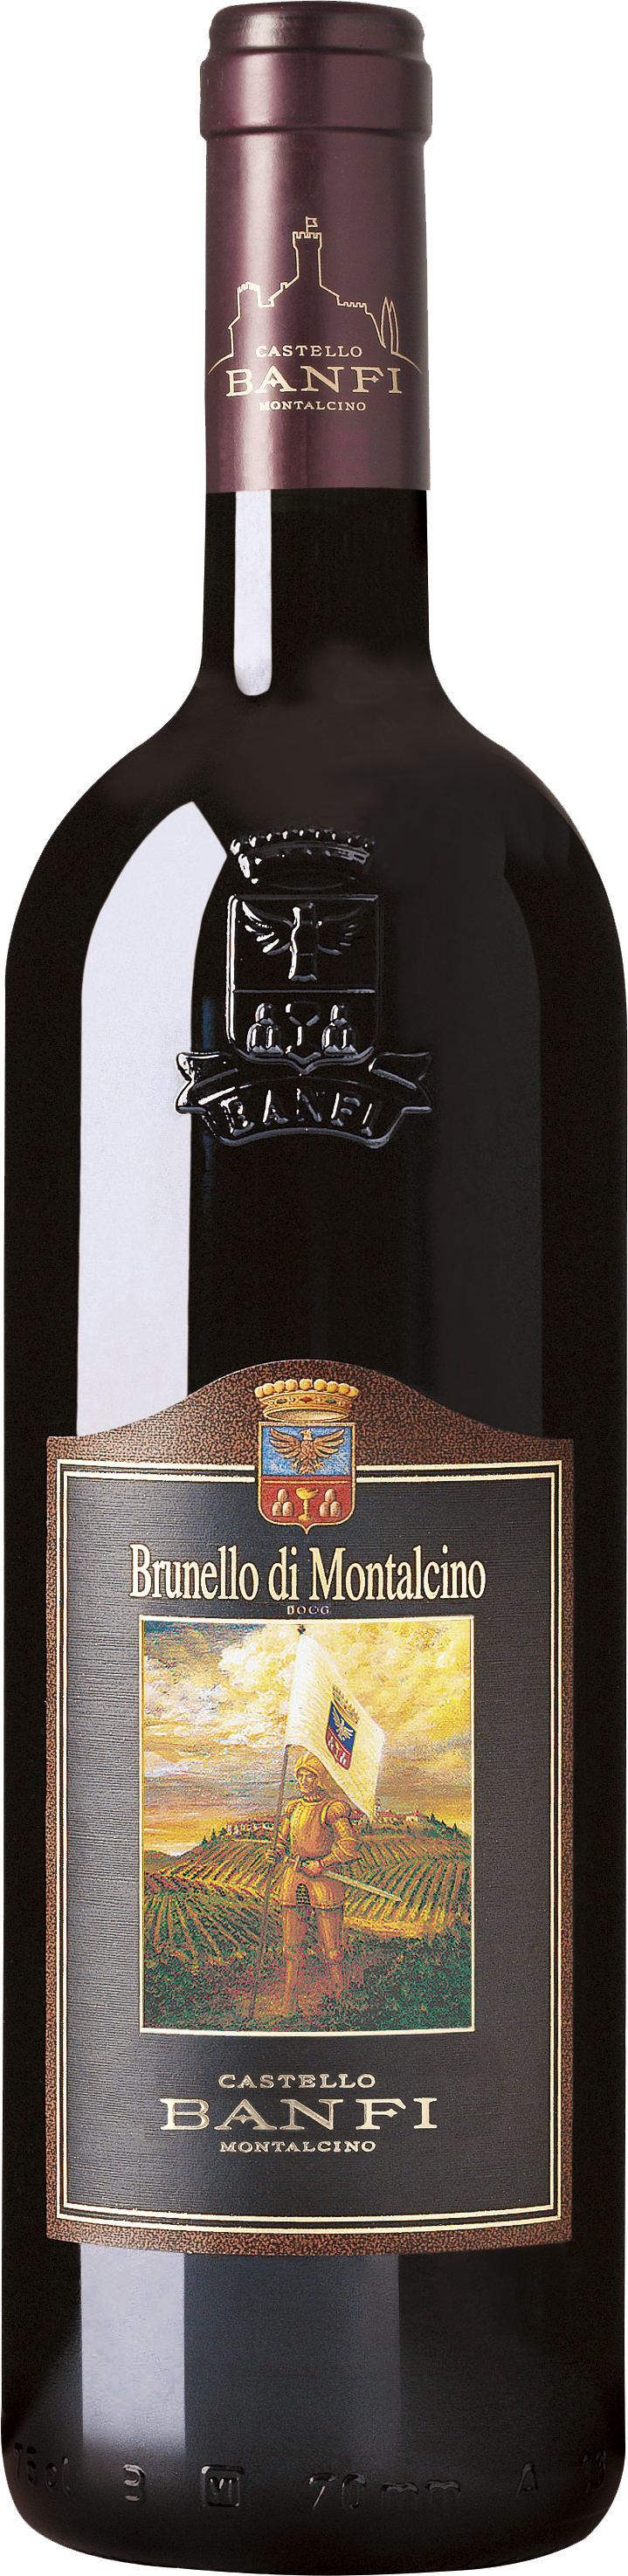 Brunello-di-Montalcino